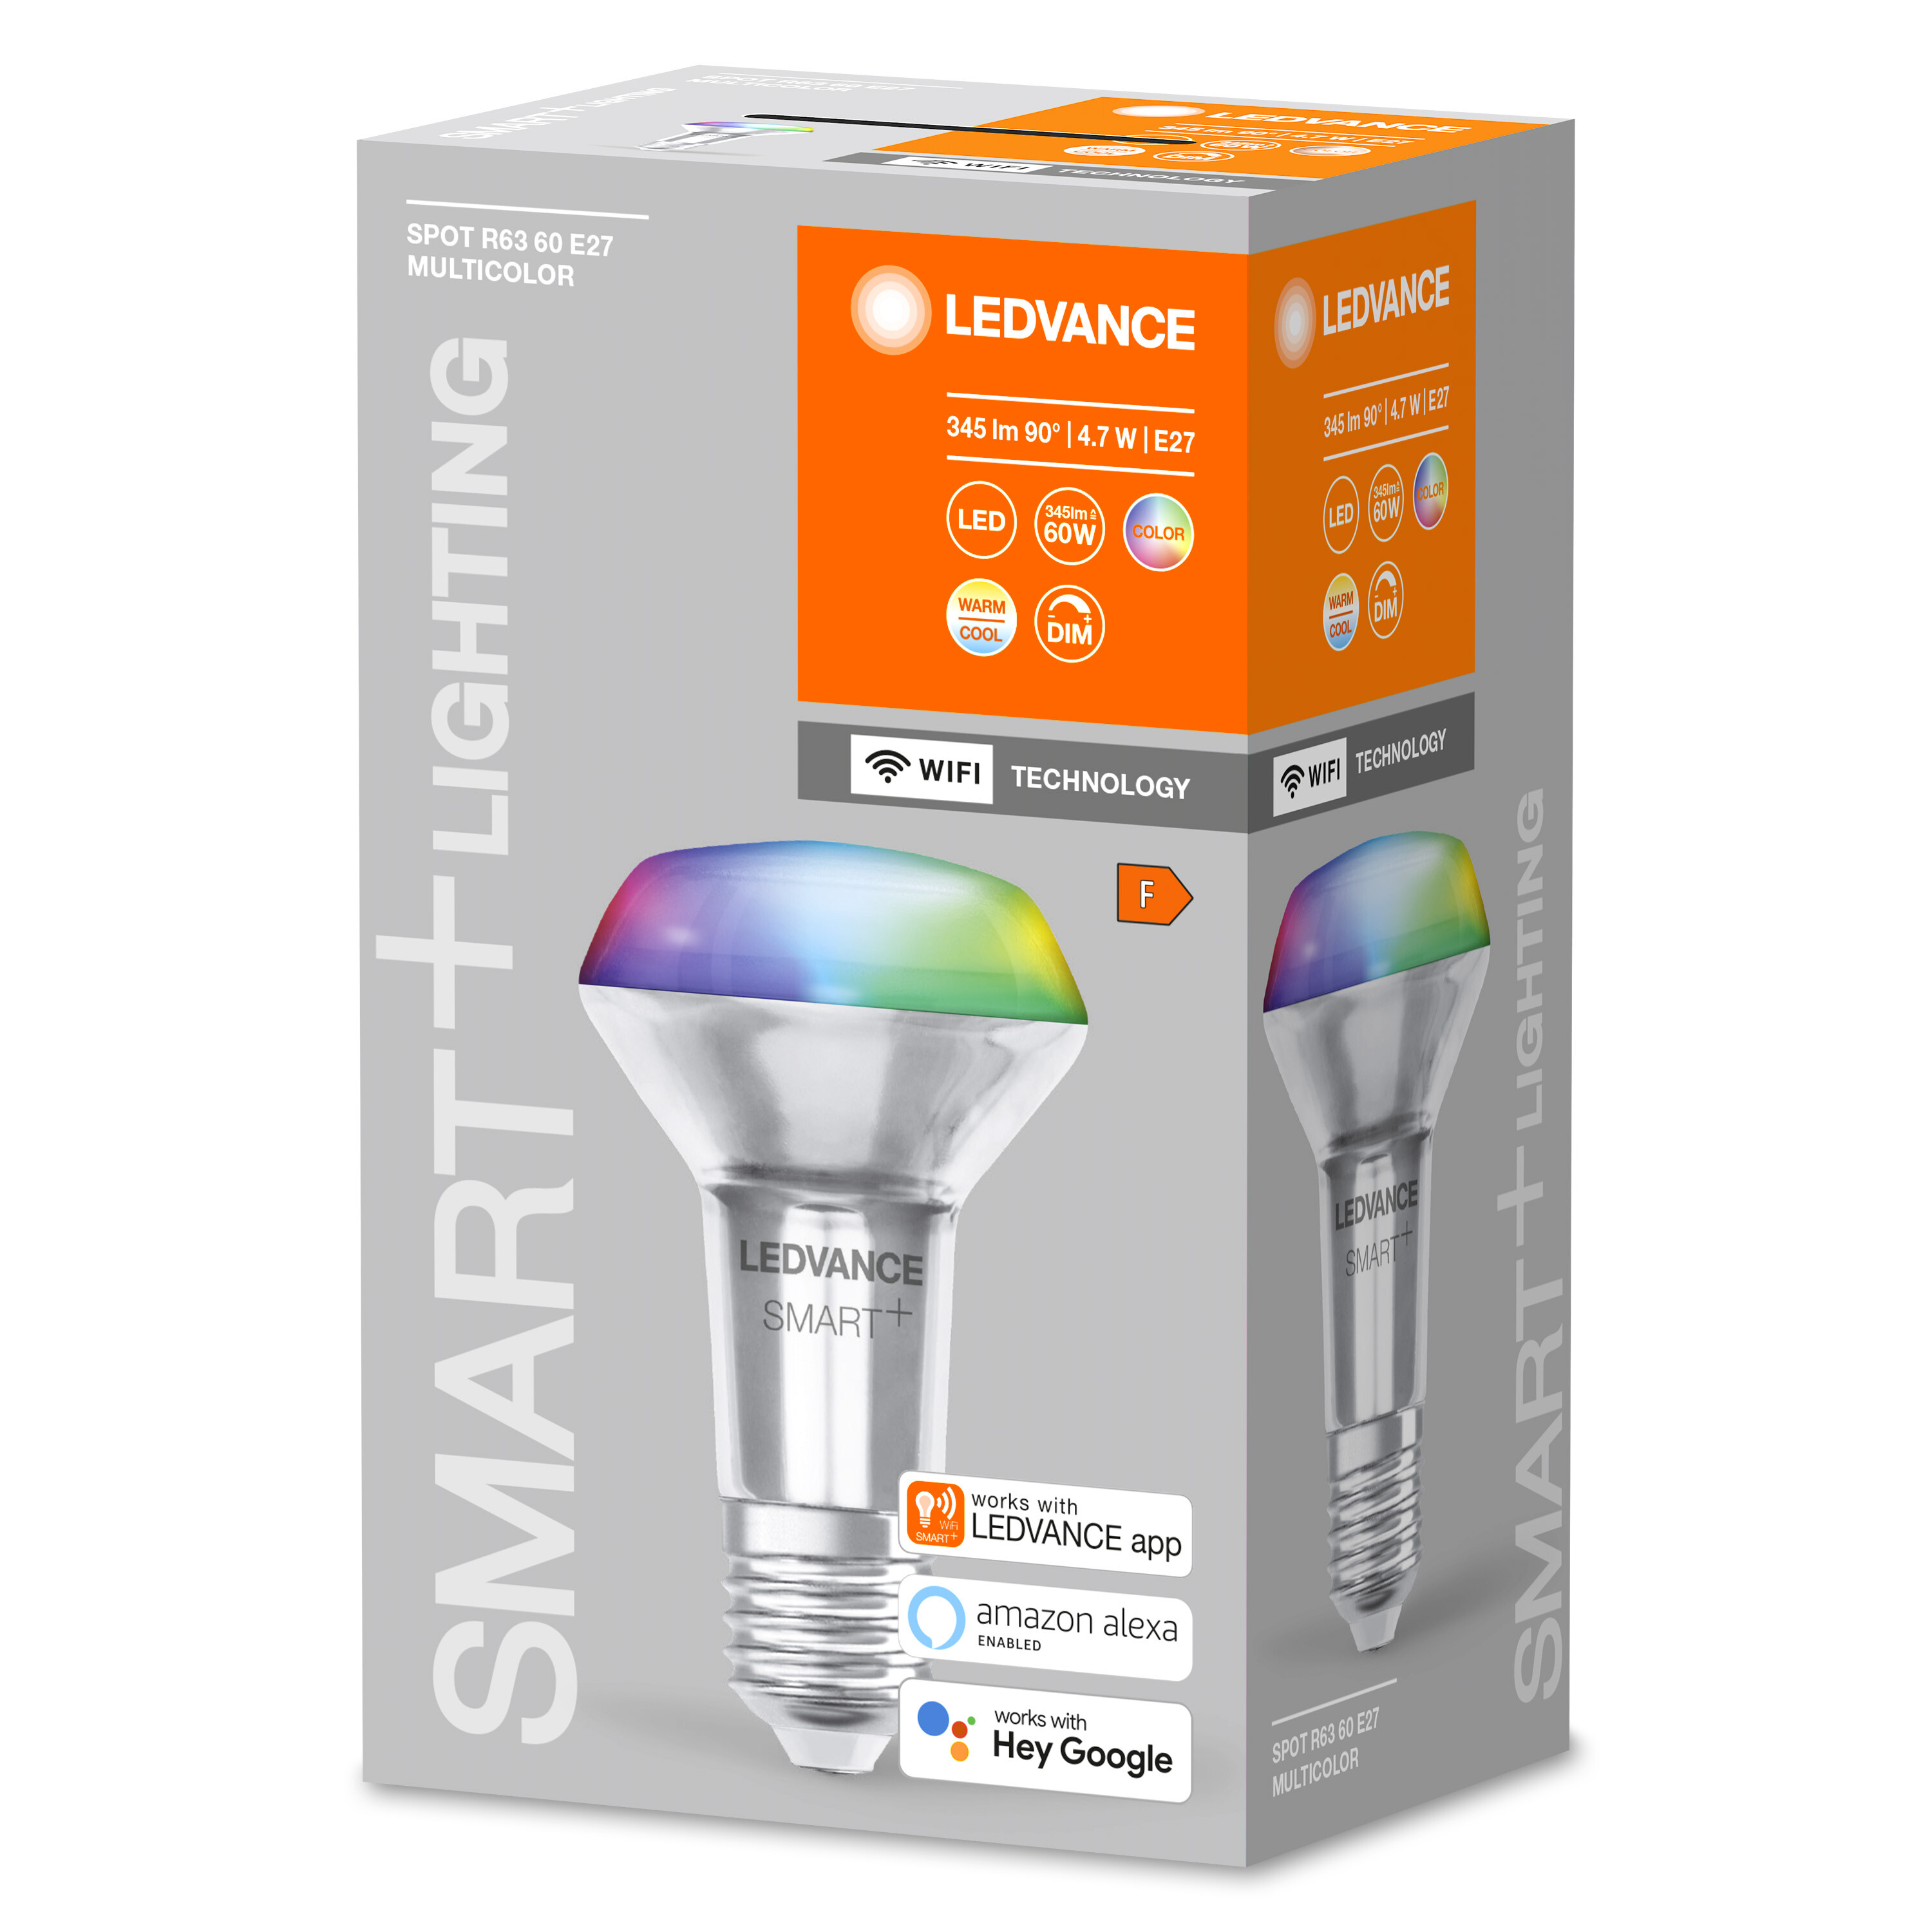 SPOT 60 LEDVANCE E27 CONCENTRA R63 Lichtfarbe Multicolor änderbar SMART+ Multicolor 6W LED Lampe